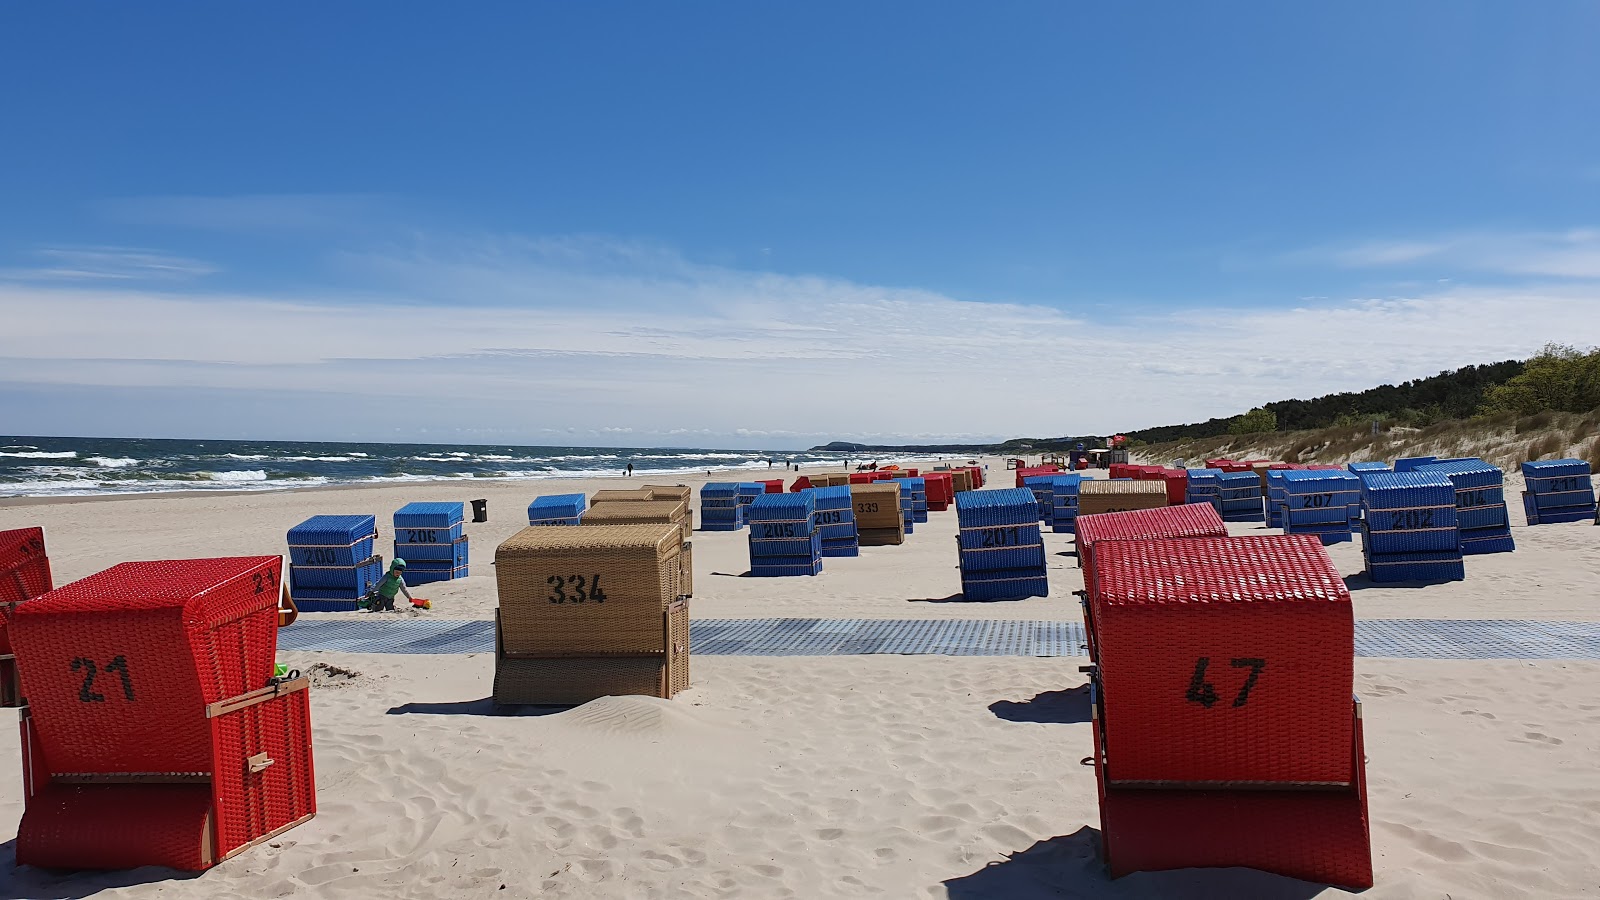 Trassenheide strand'in fotoğrafı - rahatlamayı sevenler arasında popüler bir yer